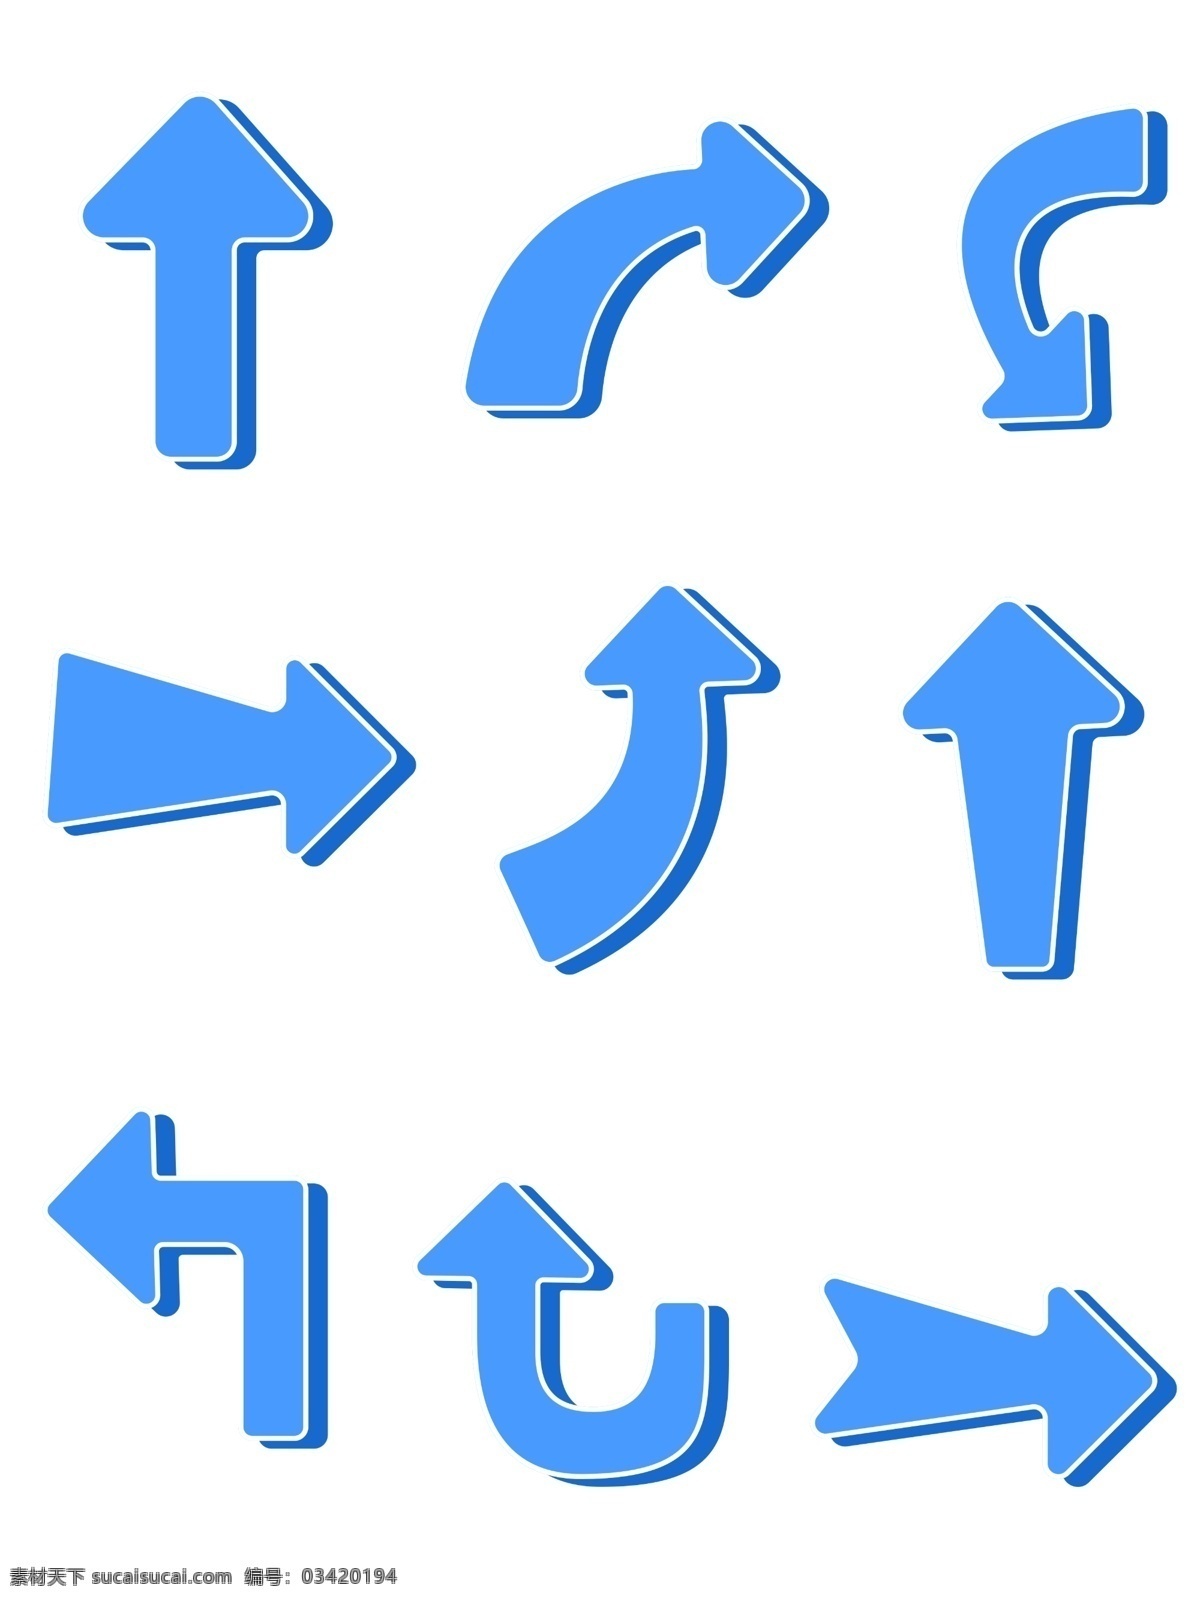 蓝白色 上下左右 圆角 箭头 元素 商用 合集 蓝色箭头 各方向箭头 箭头元素 立体箭头 箭头素材